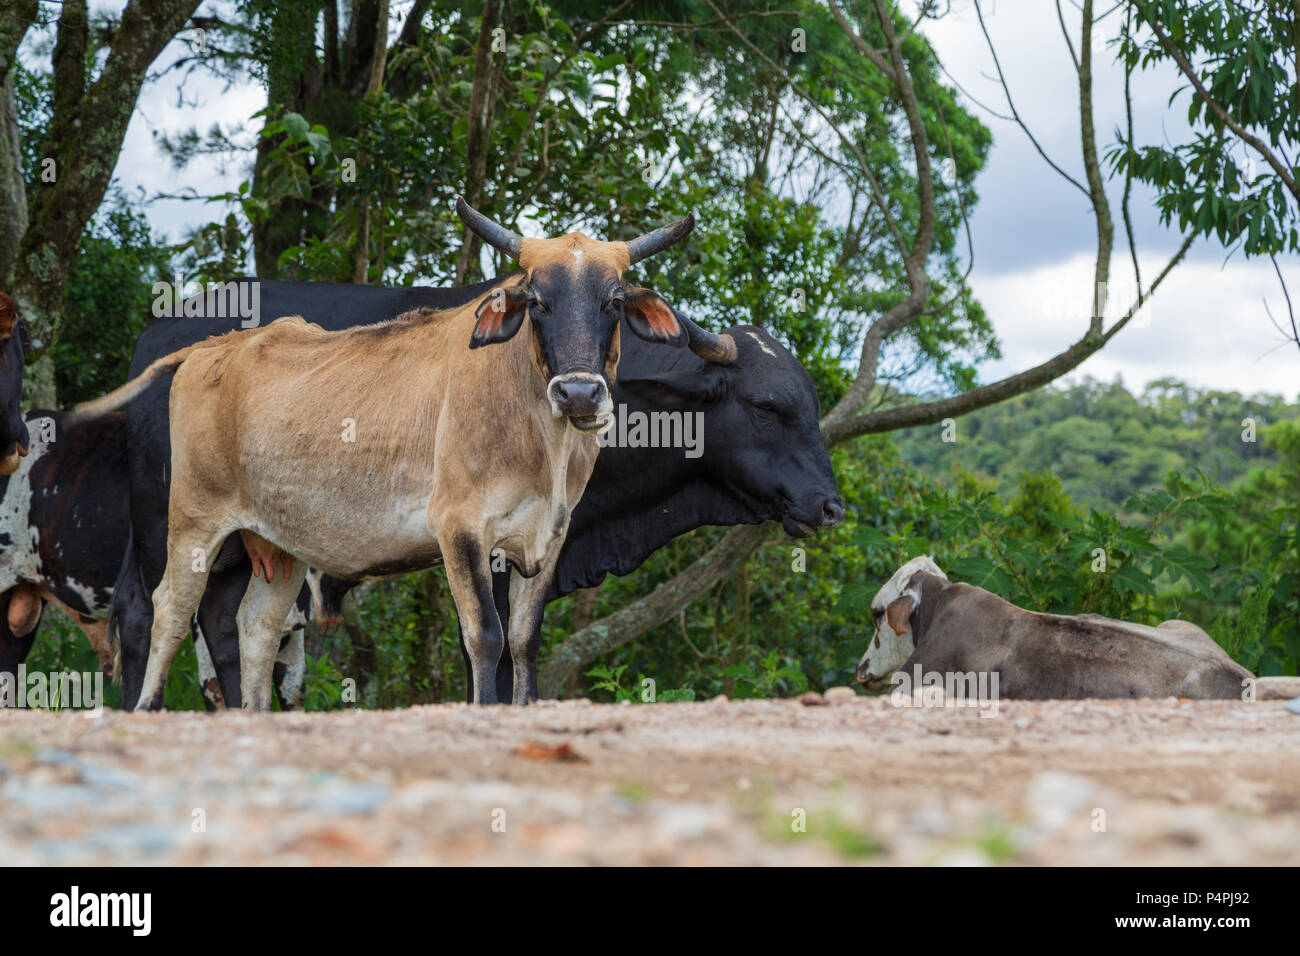 Mandria di mucche di fianco alla strada accanto ad alberi contro il cielo nuvoloso, vicino a Pico do Itapeva, Pindamonhangaba, Sao Paulo, Brasile Foto Stock